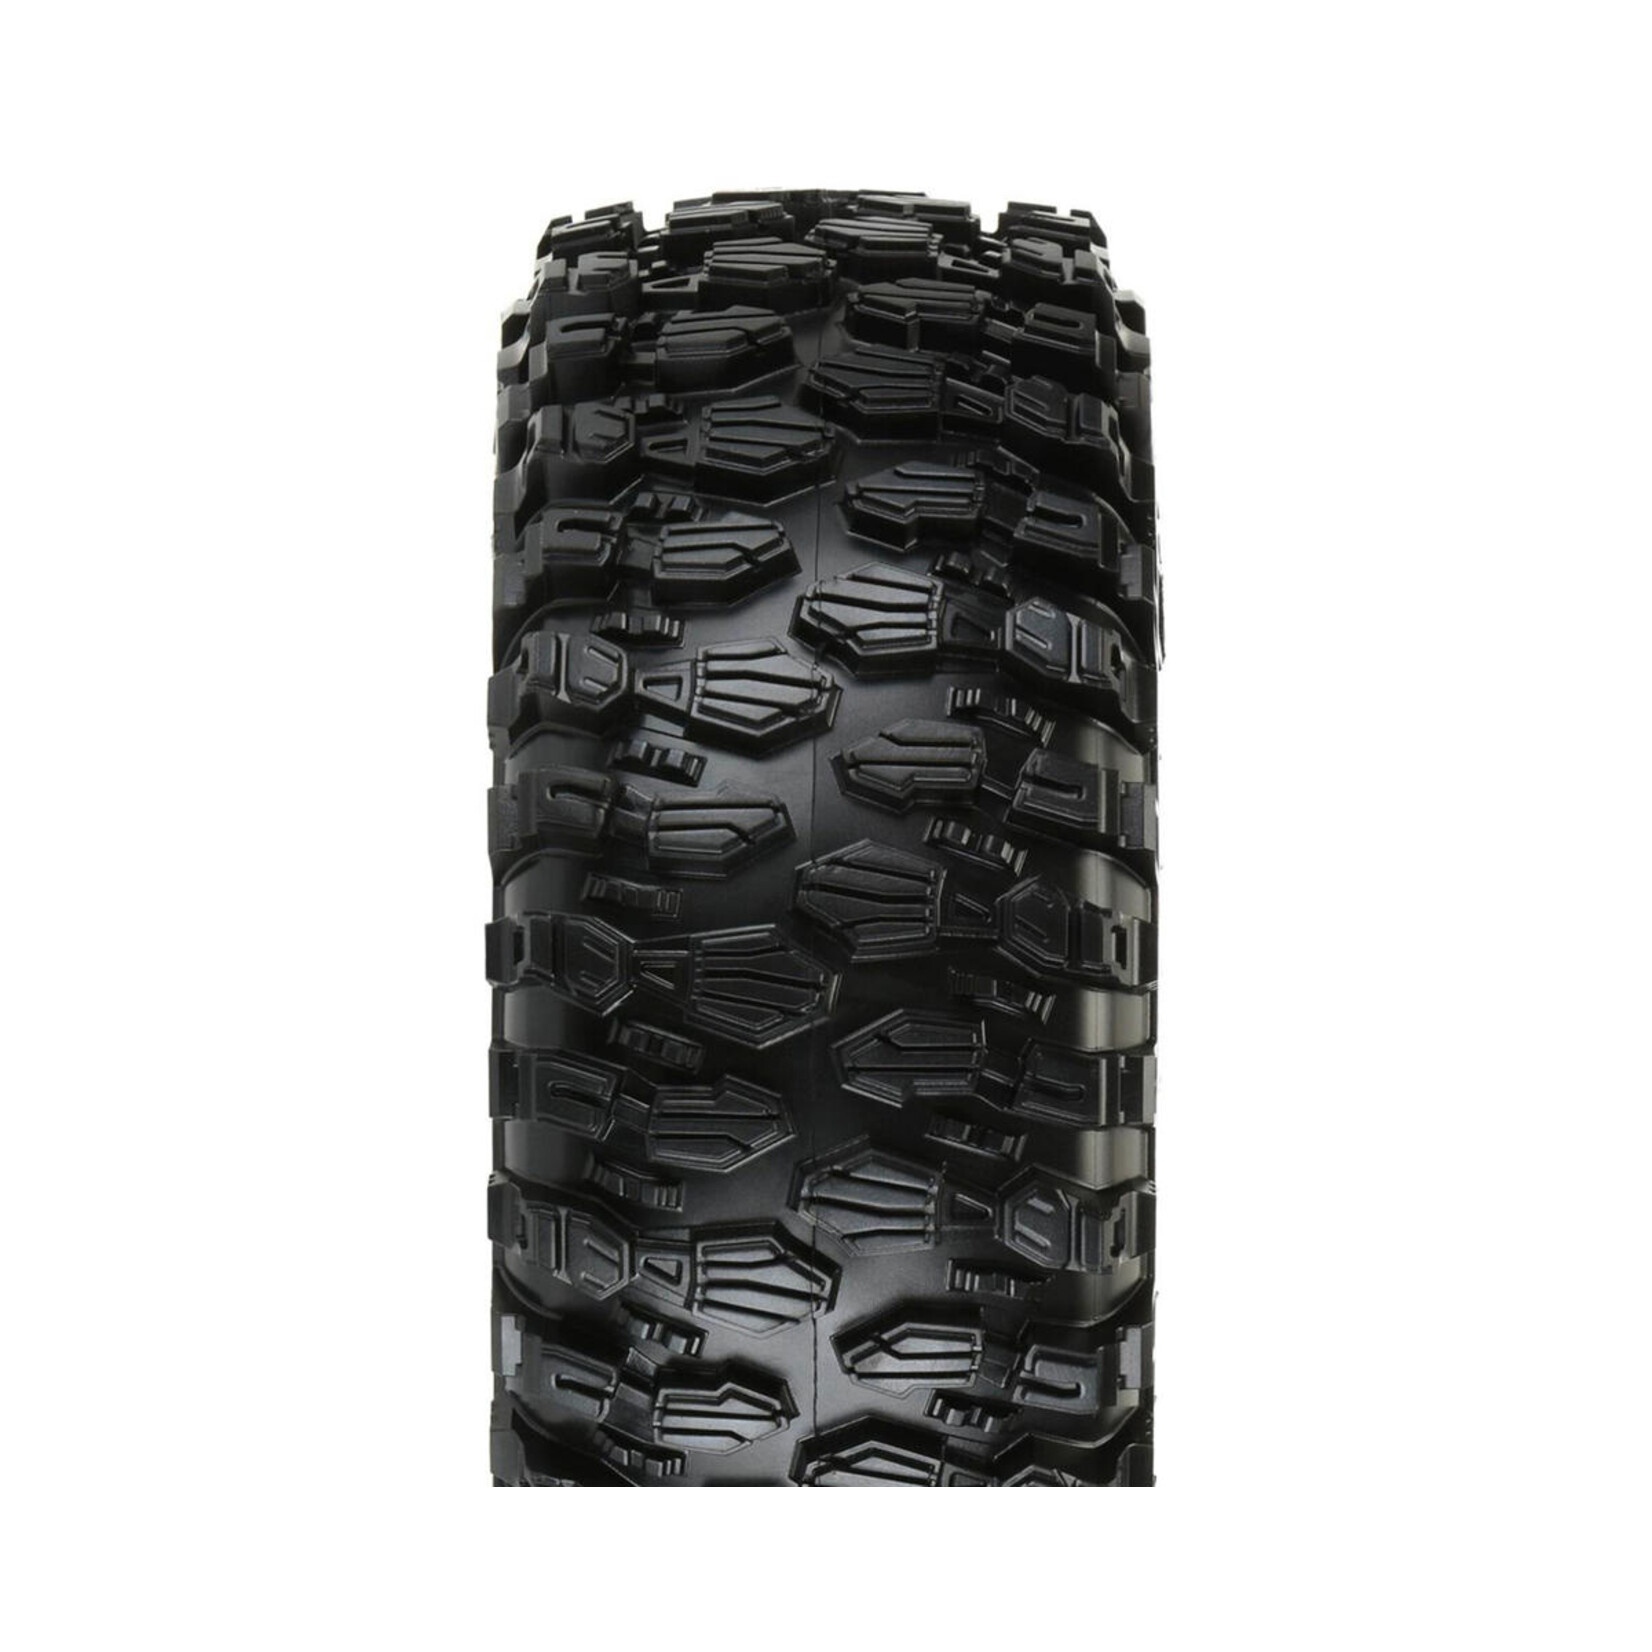 Pro-Line Pro-Line Hyrax 2.2" Rock Terrain Crawler Tires w/Memory Foam (2) (G8) #10132-14